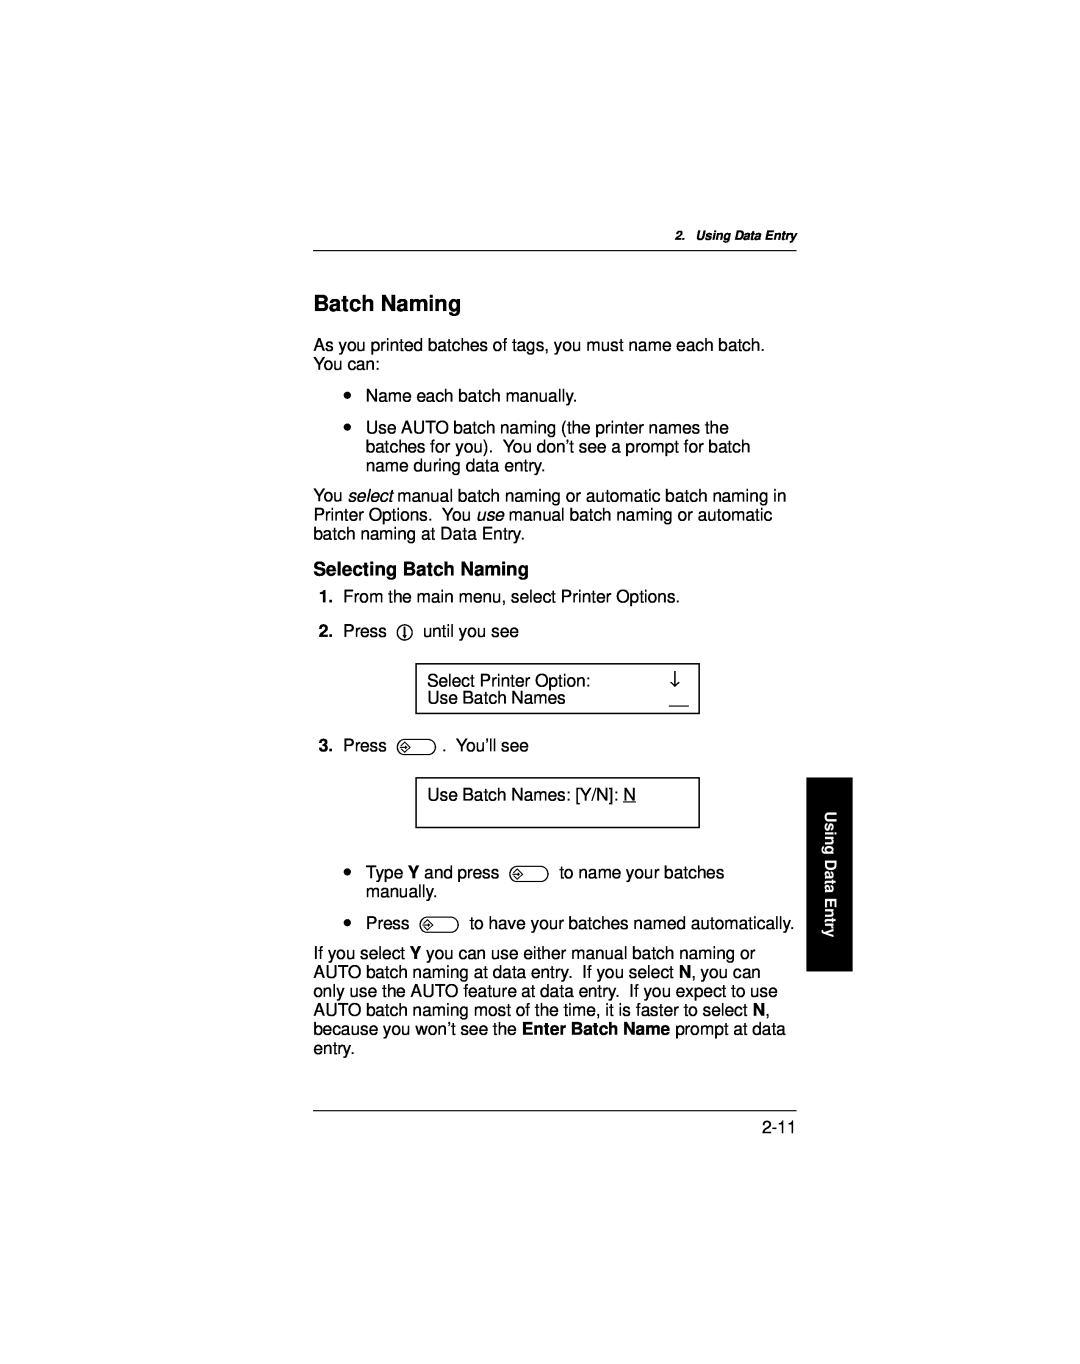 Paxar 9400 manual Selecting Batch Naming 